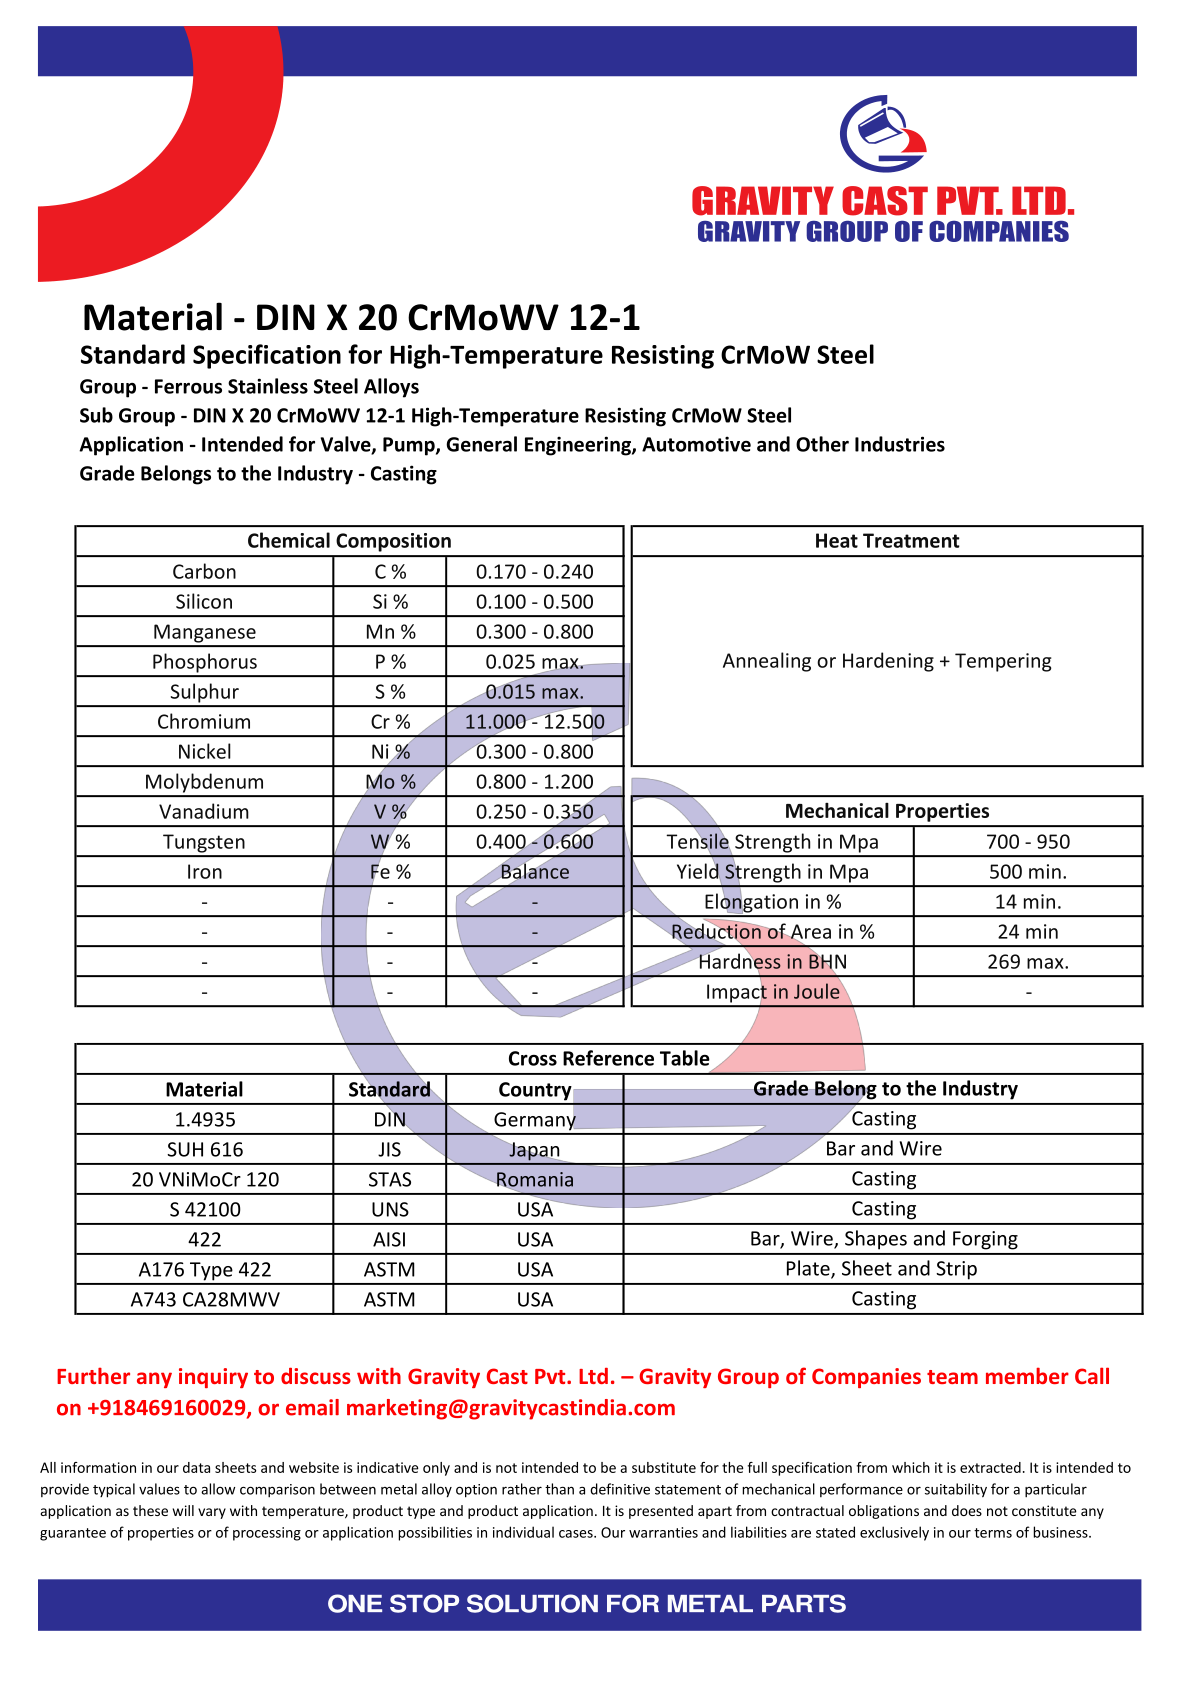 DIN X 20 CrMoWV 12-1.pdf